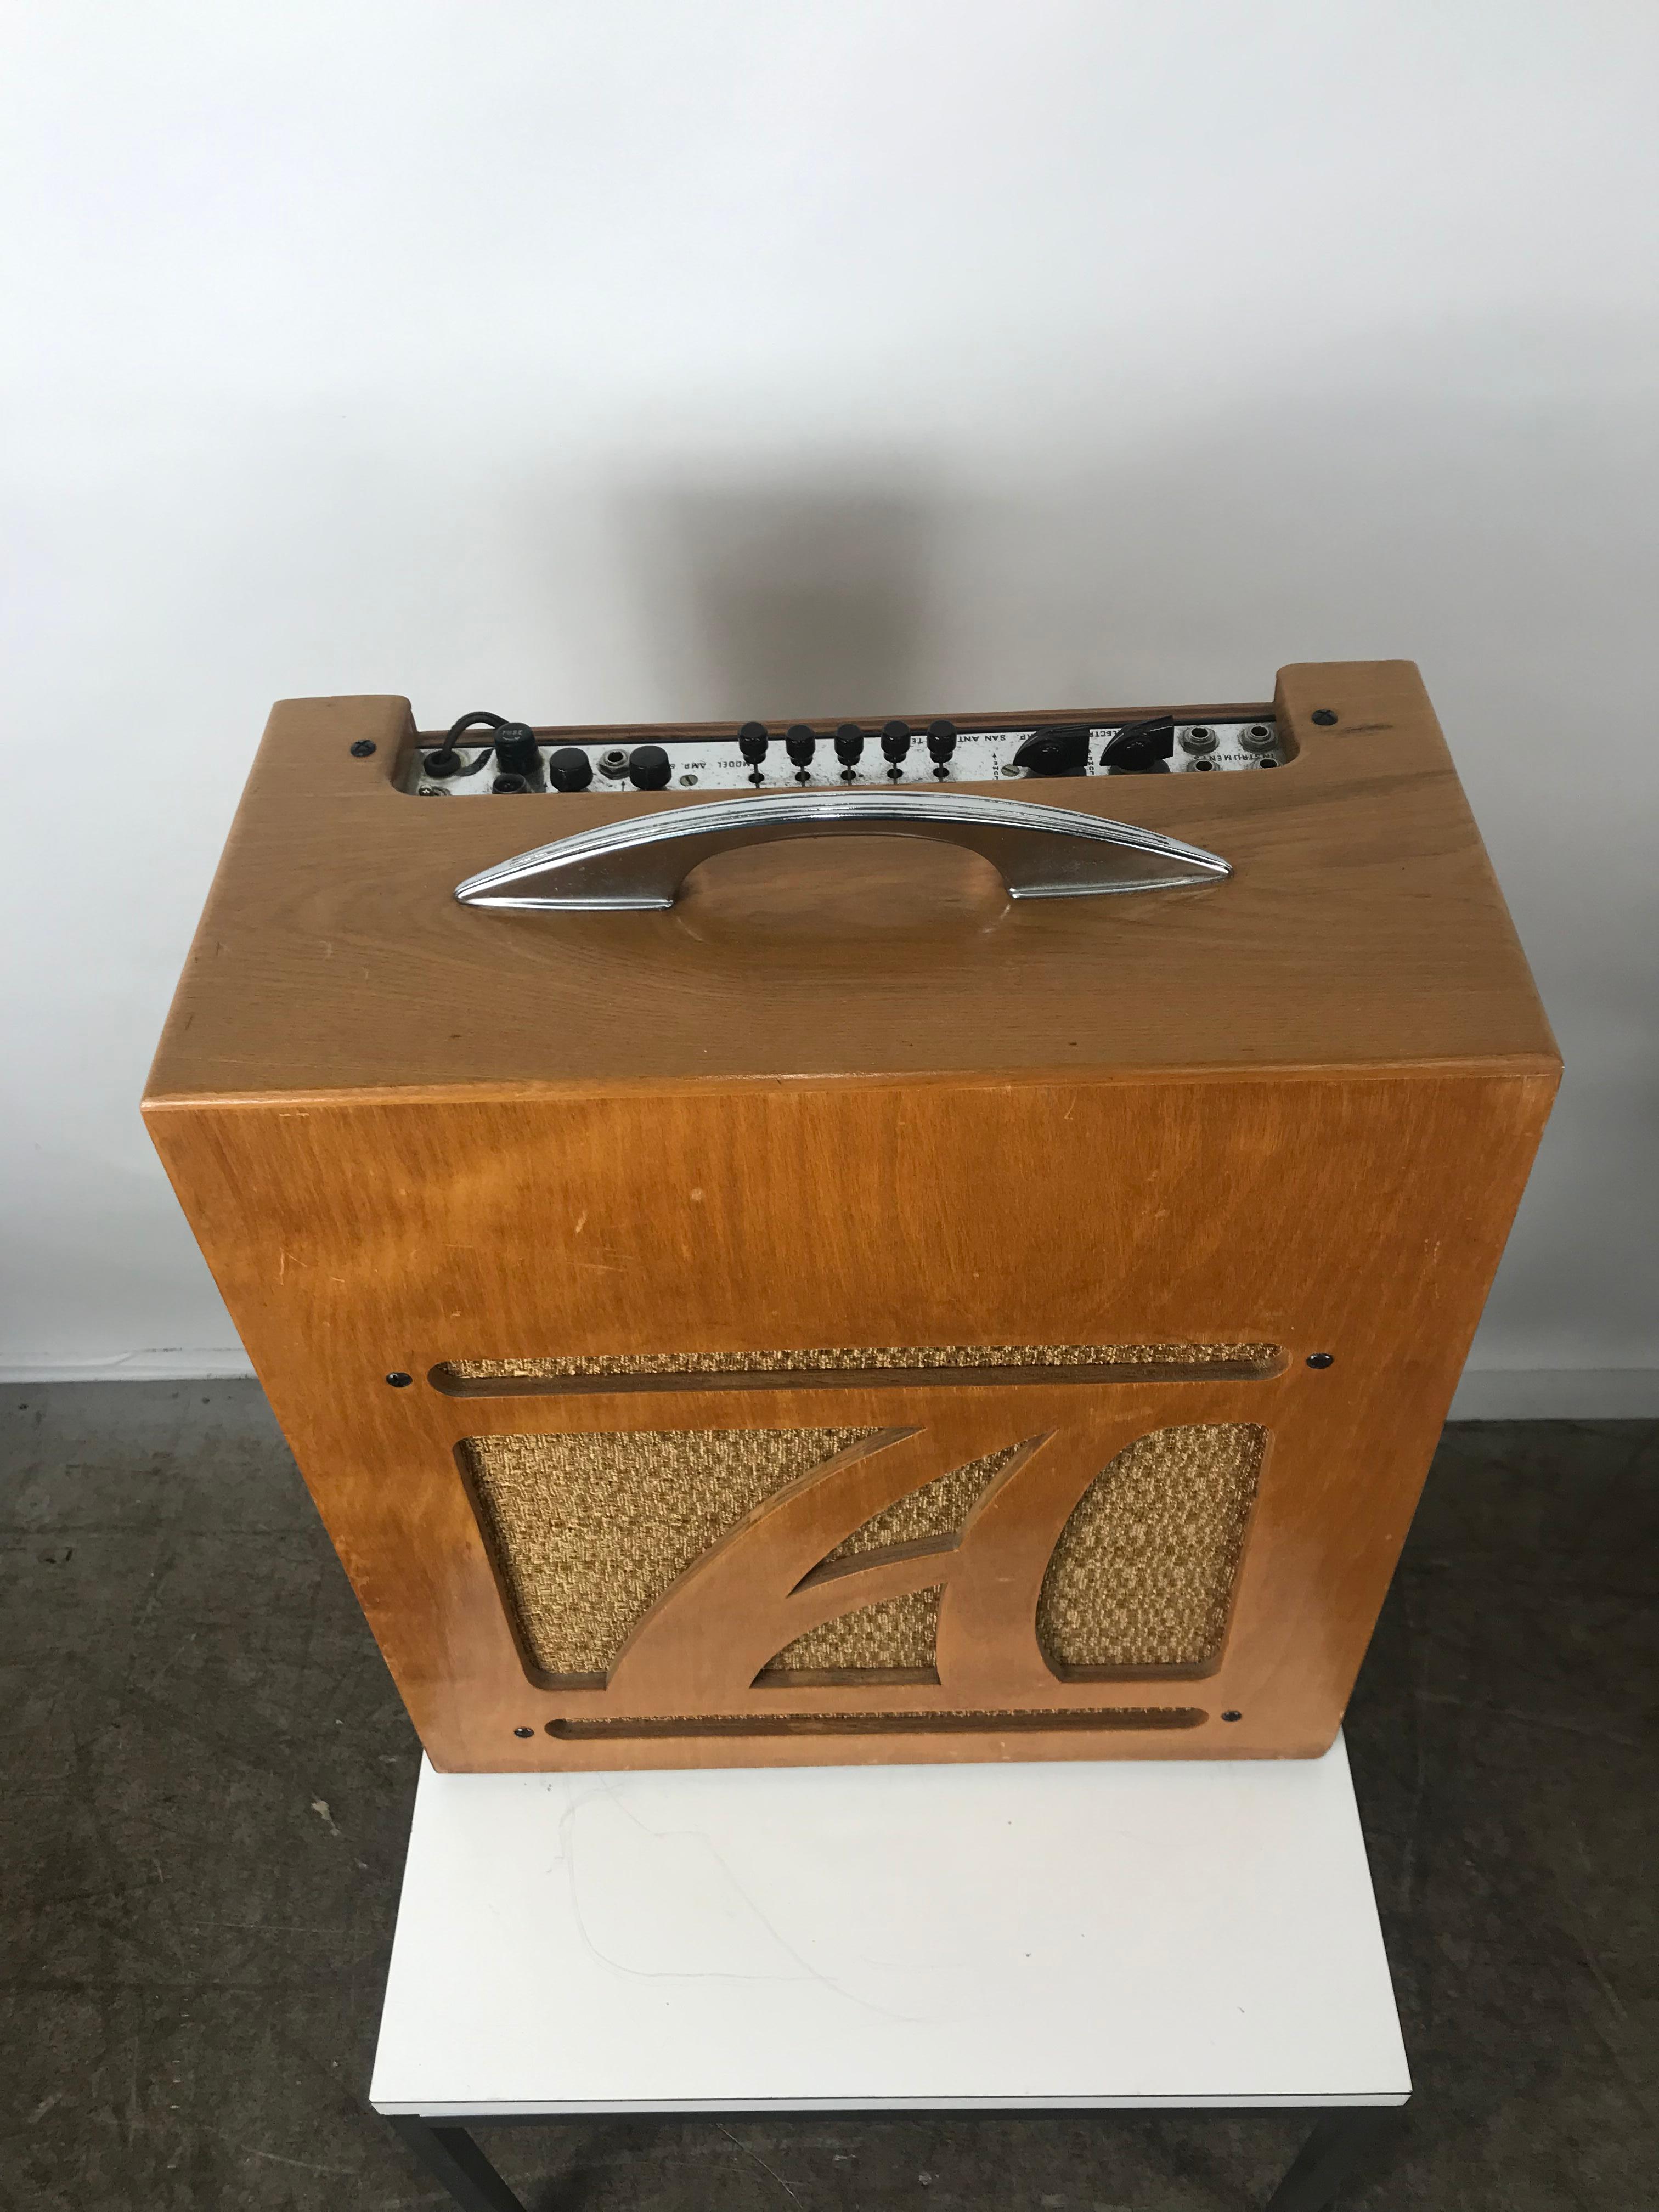 Äußerst seltener Alamo Electrical Musical Amplifier, Modell 6A, 1954 (Moderne der Mitte des Jahrhunderts)